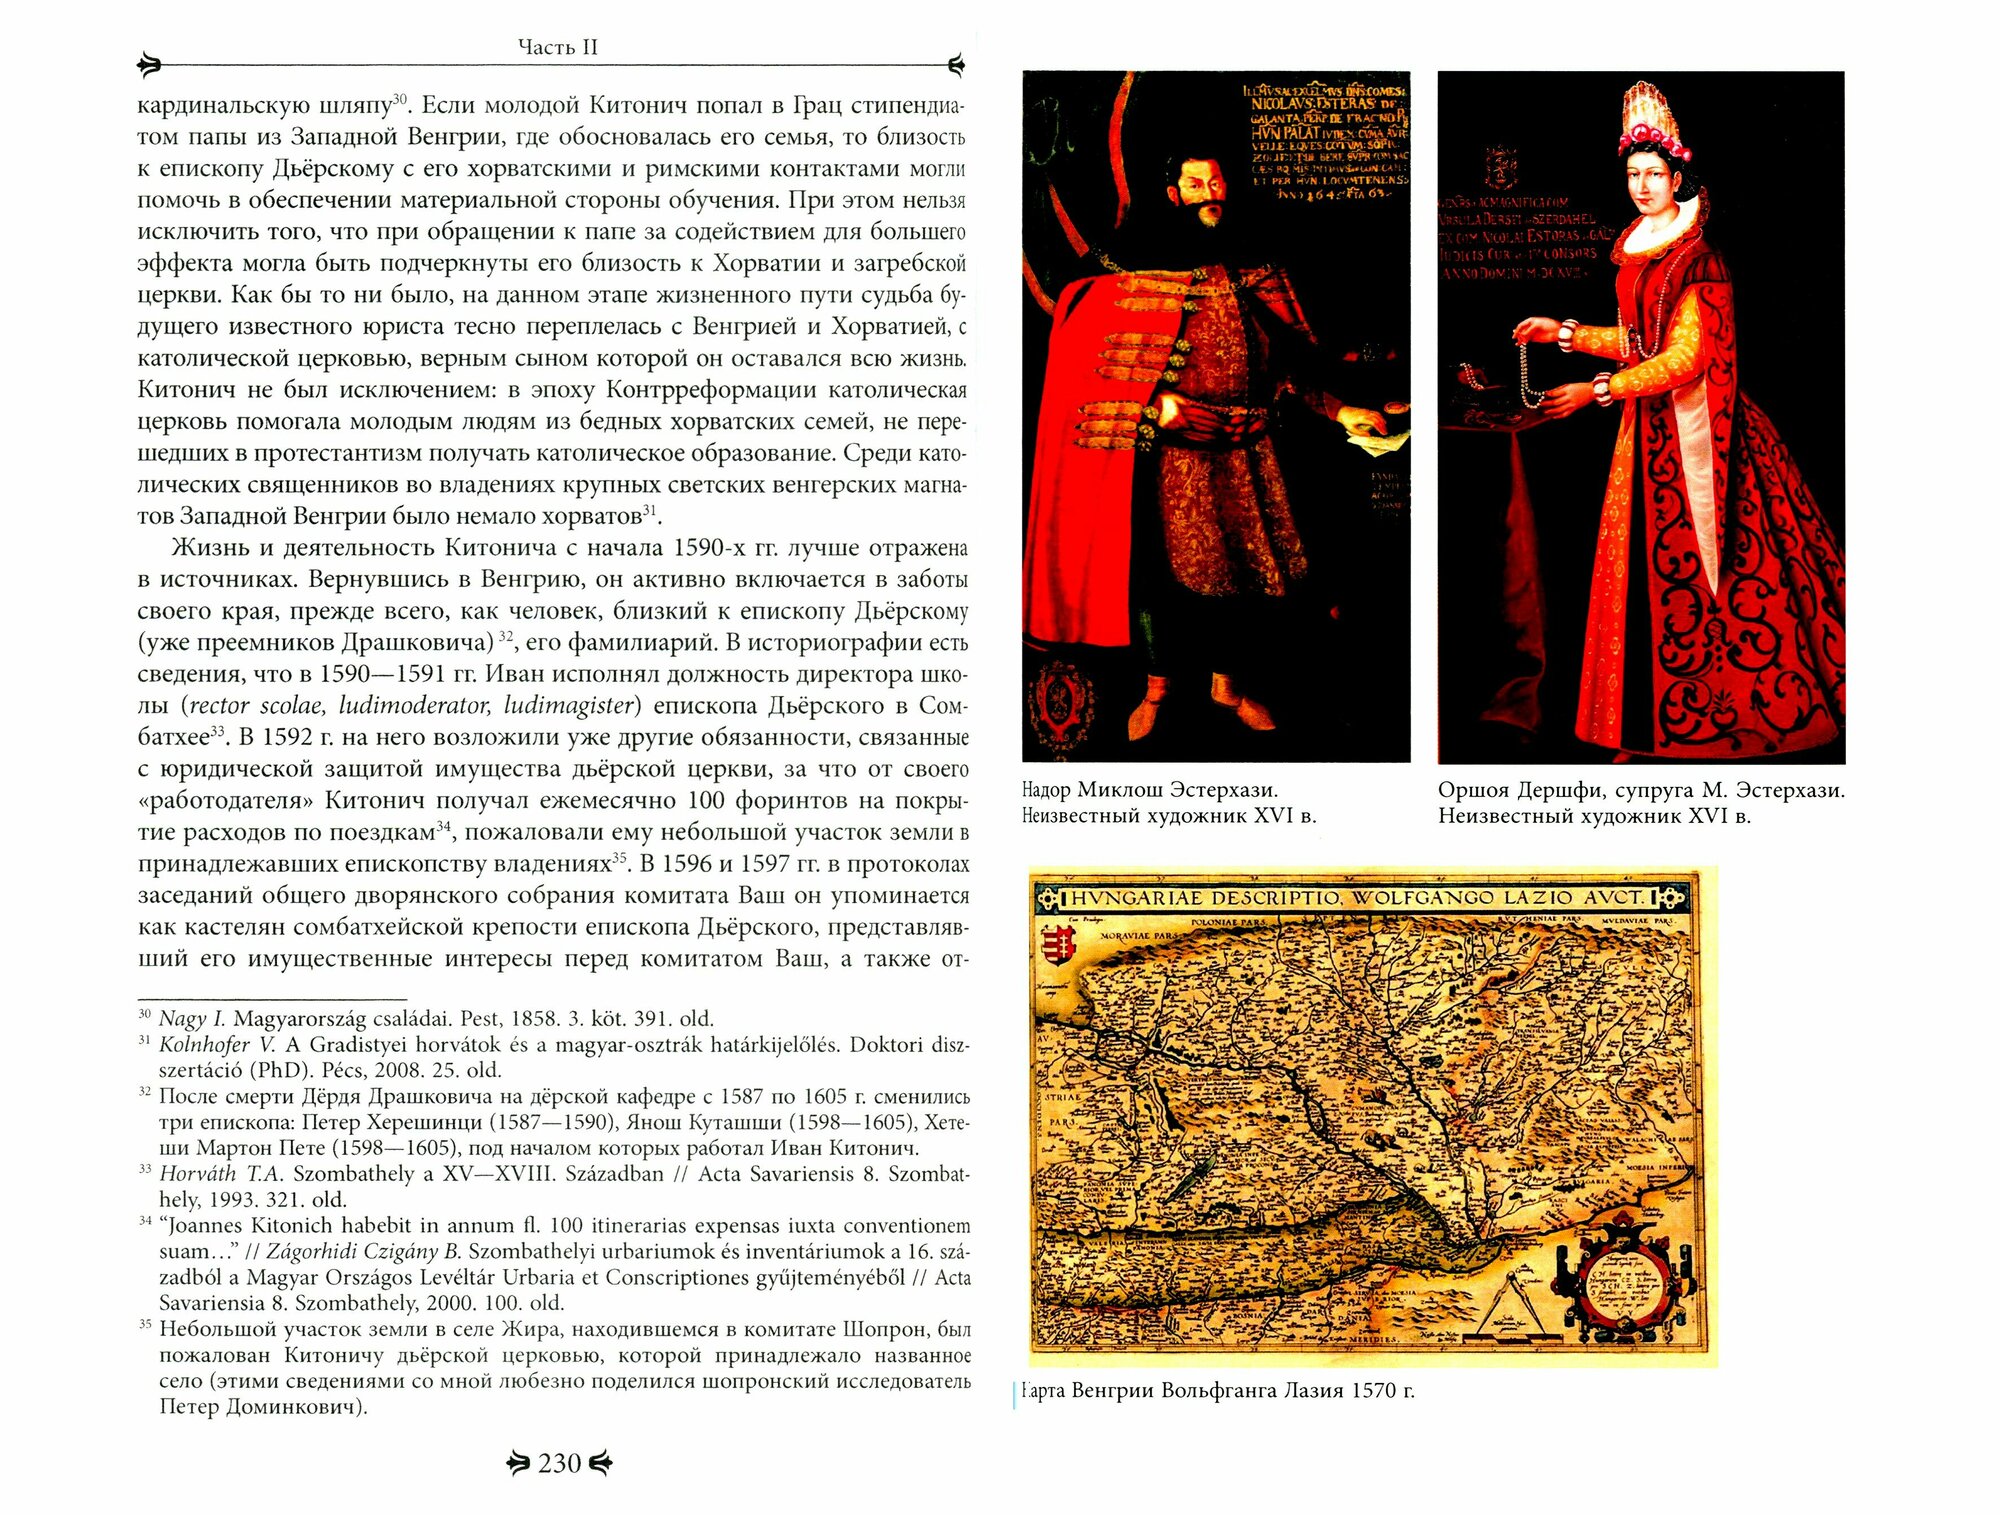 Венгрия XVI-XVII вв. Портреты современников на фоне эпохи - фото №6